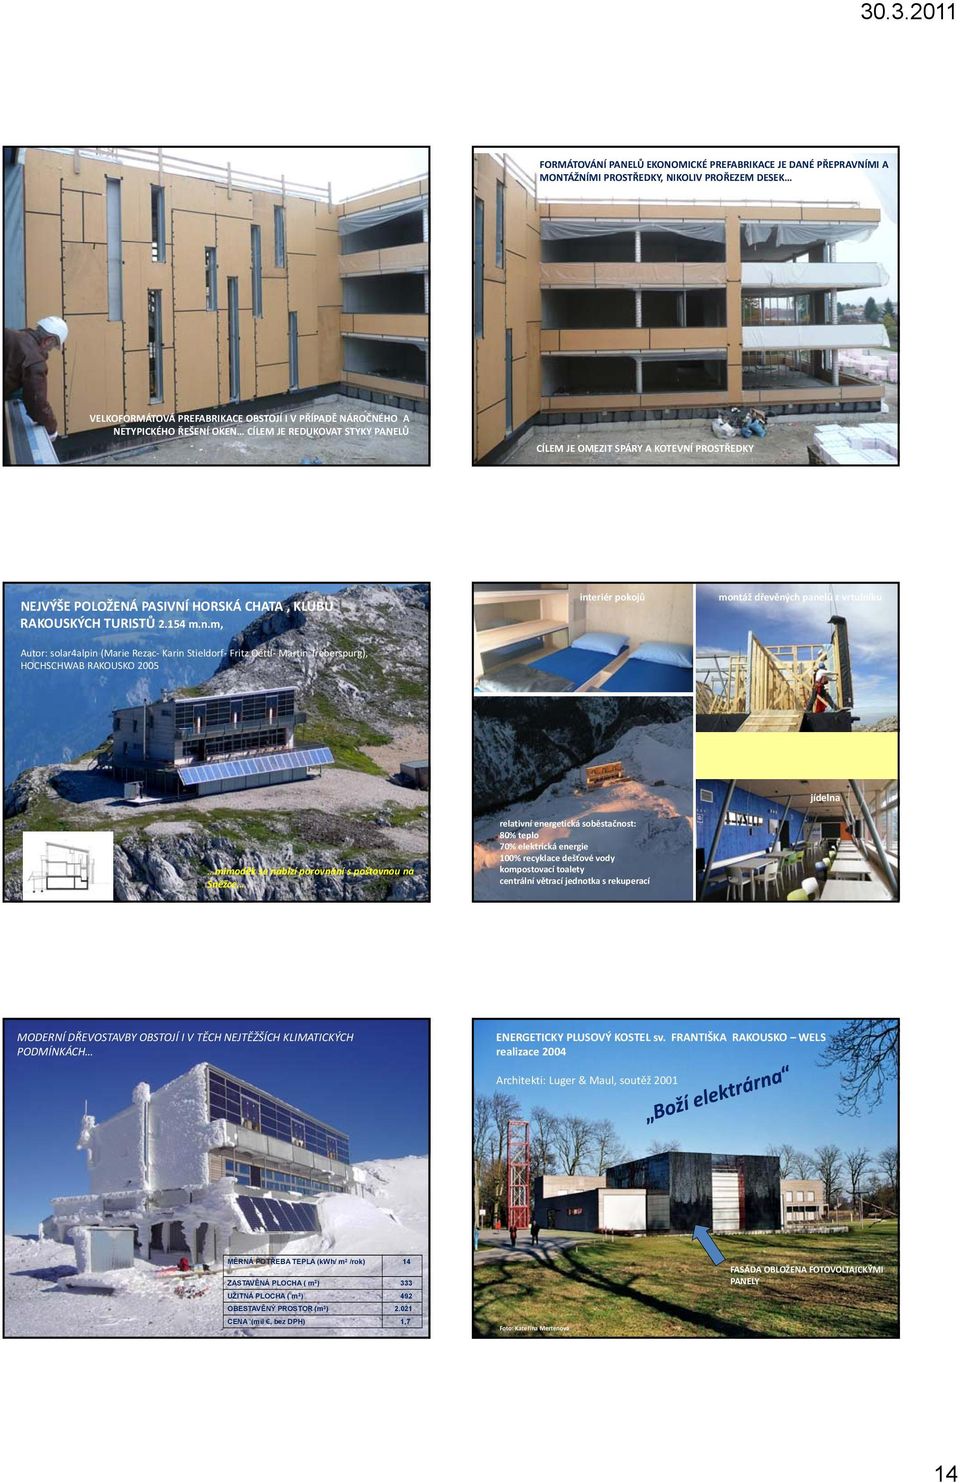 m, interiér pokojů montáž dřevěných panelů z vrtulníku Autor: solar4alpin (Marie Rezac Karin Stieldorf Fritz Oettl Martin Treberspurg), HOCHSCHWAB RAKOUSKO 2005 mimoděk se nabízí porovnání s